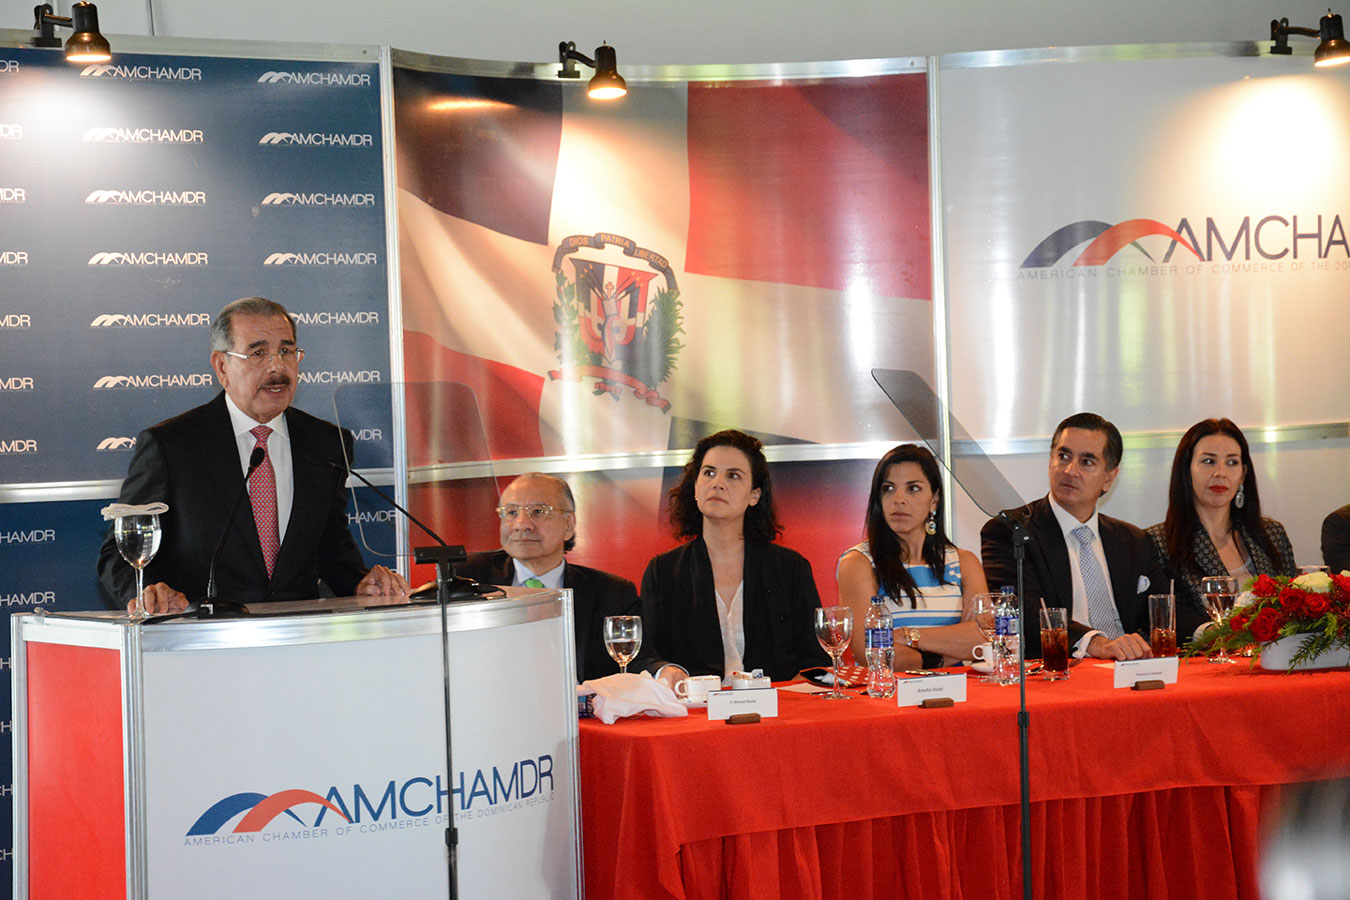 Presidente Danilo Medina durante su participación ante la Cámara Americana de Comercio. | Gabriel Alcántara